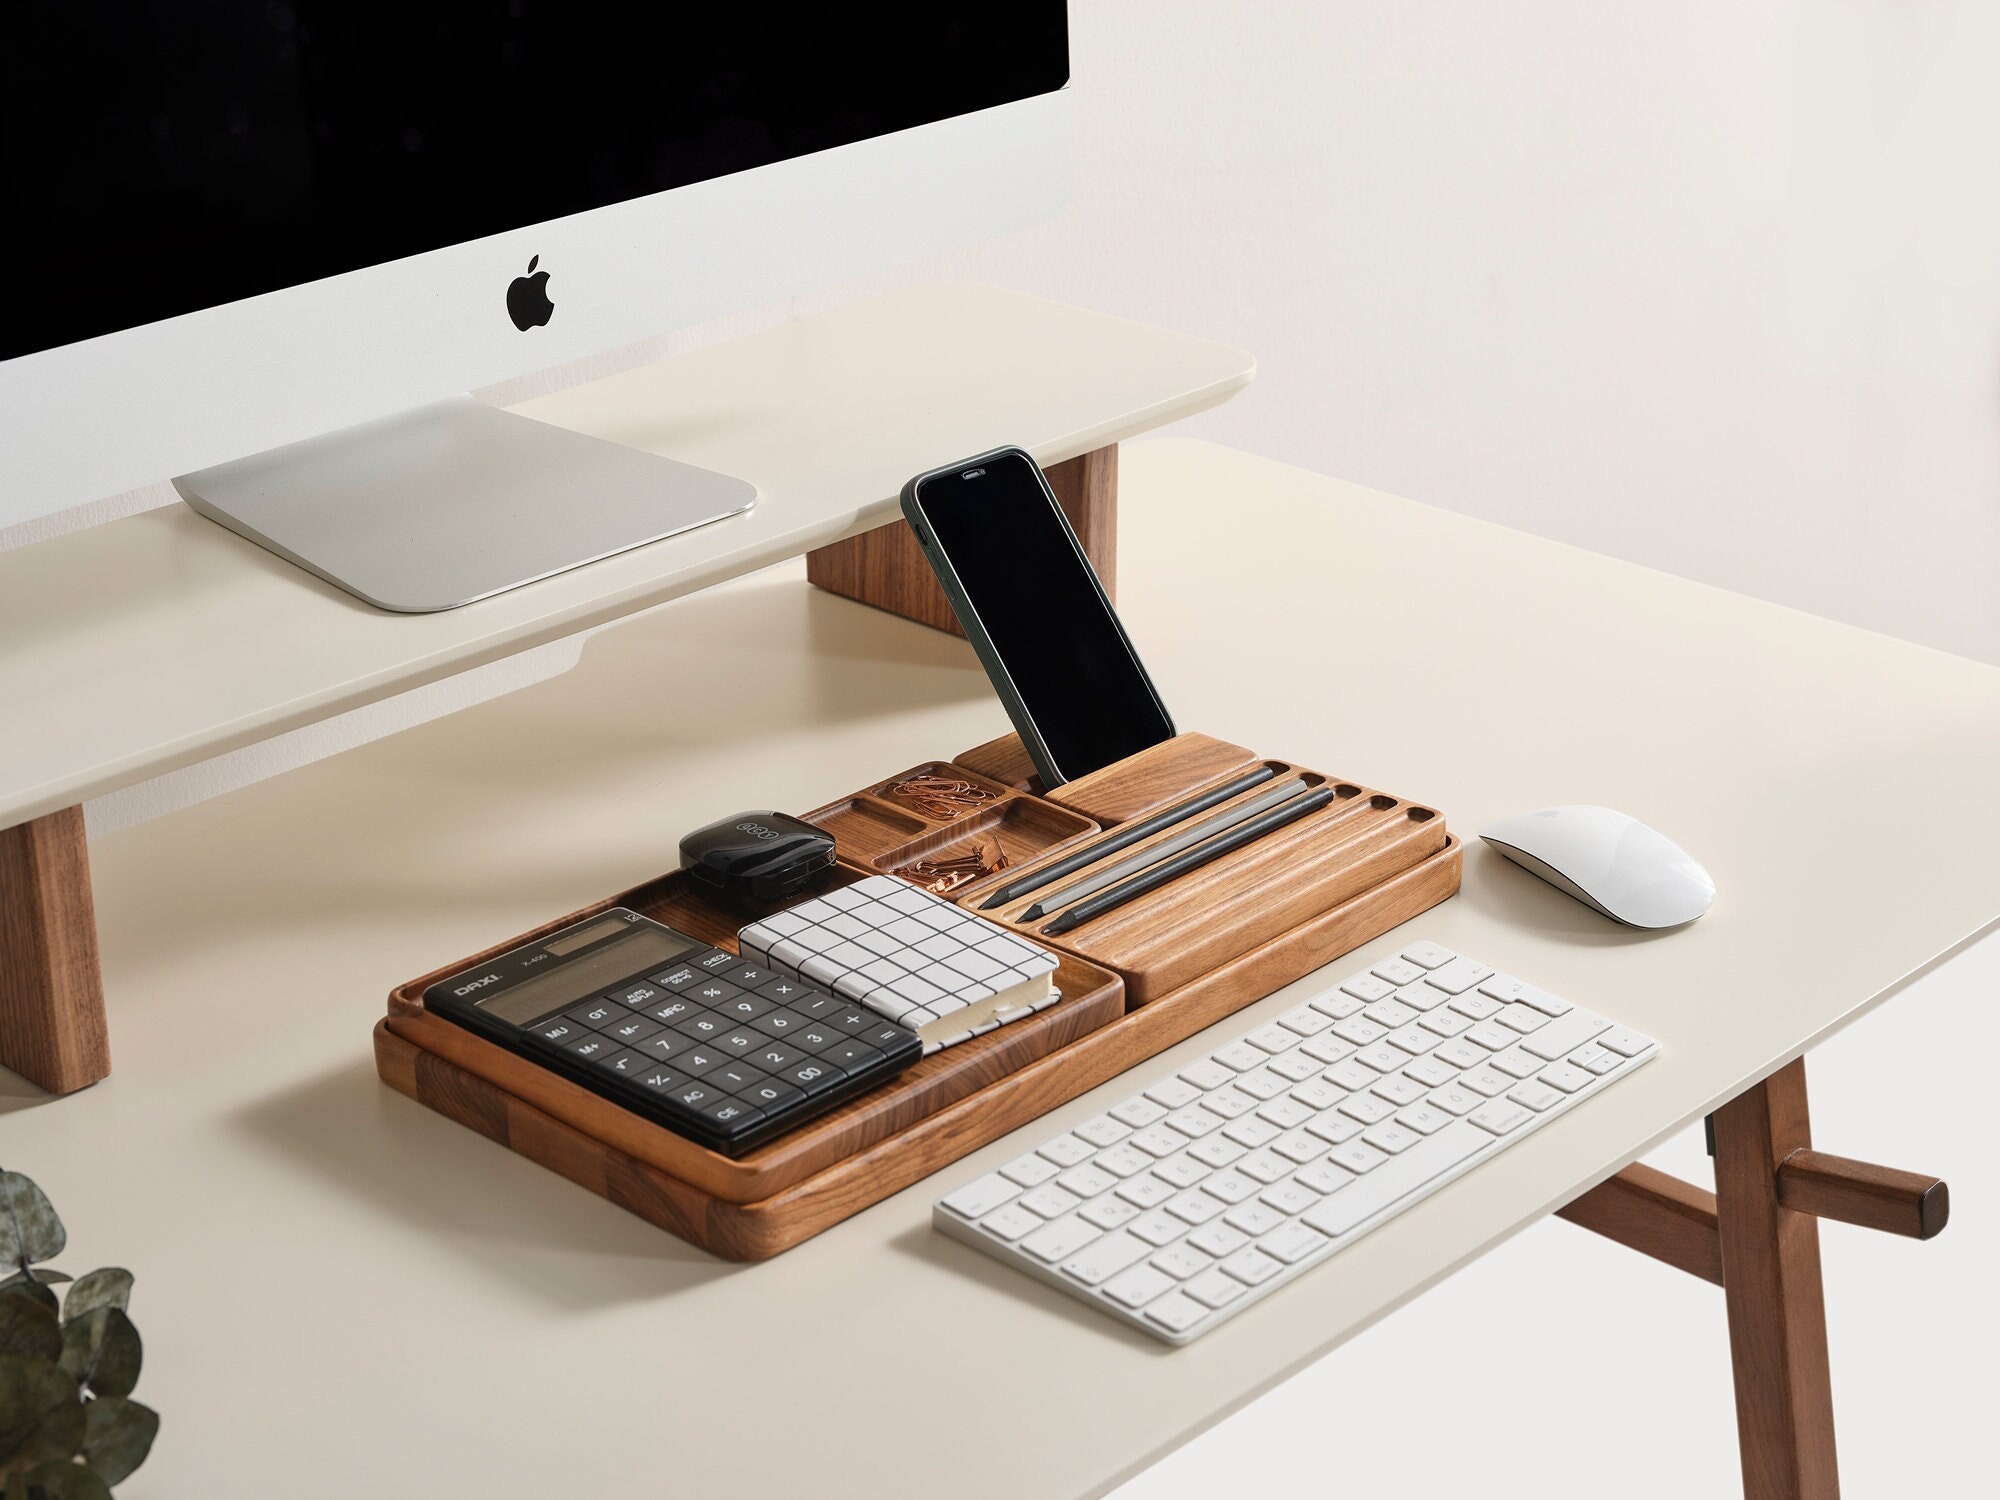 Red Desk Organizer, Desk Accessories for Office, Desktop Organizer